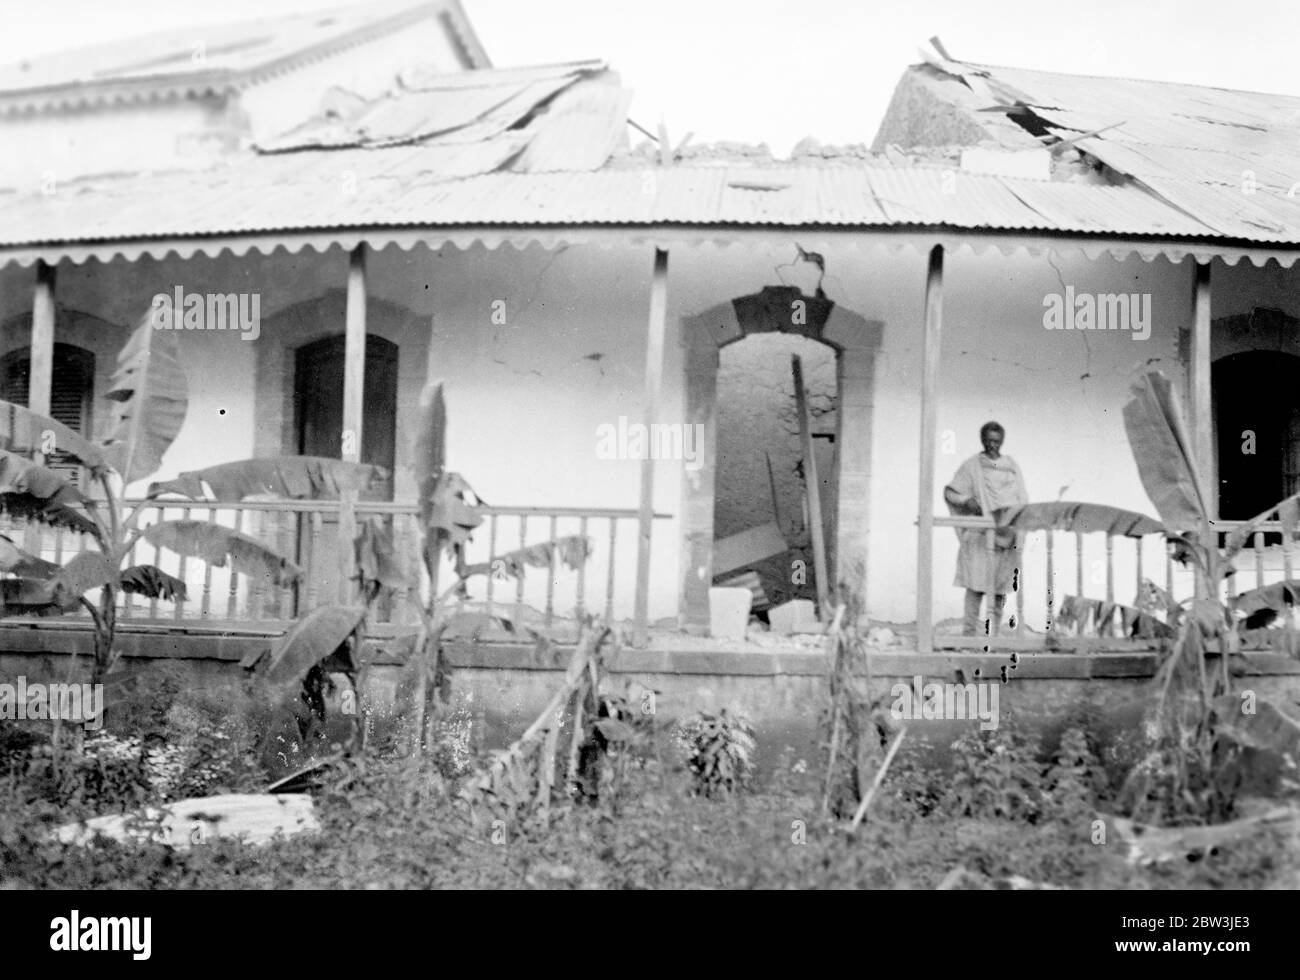 Harar città distrutta e deserta , attende l'occupazione italiana . Harar , la seconda città di Abissinia devastata da ripetute incursioni aeree e attacchi di gas , presenta un quadro di desolazione in attesa dell' arrivo dell' esercito invasore di Crazieni dal sud . Molti degli edifici principali sono distrutte e inabitabili a seguito delle ripetute incursioni dei bombardamenti . Spettacoli fotografici , l'hotel principale di Harar è naufragato in una delle incursioni aeree . 22 aprile 1936 Foto Stock